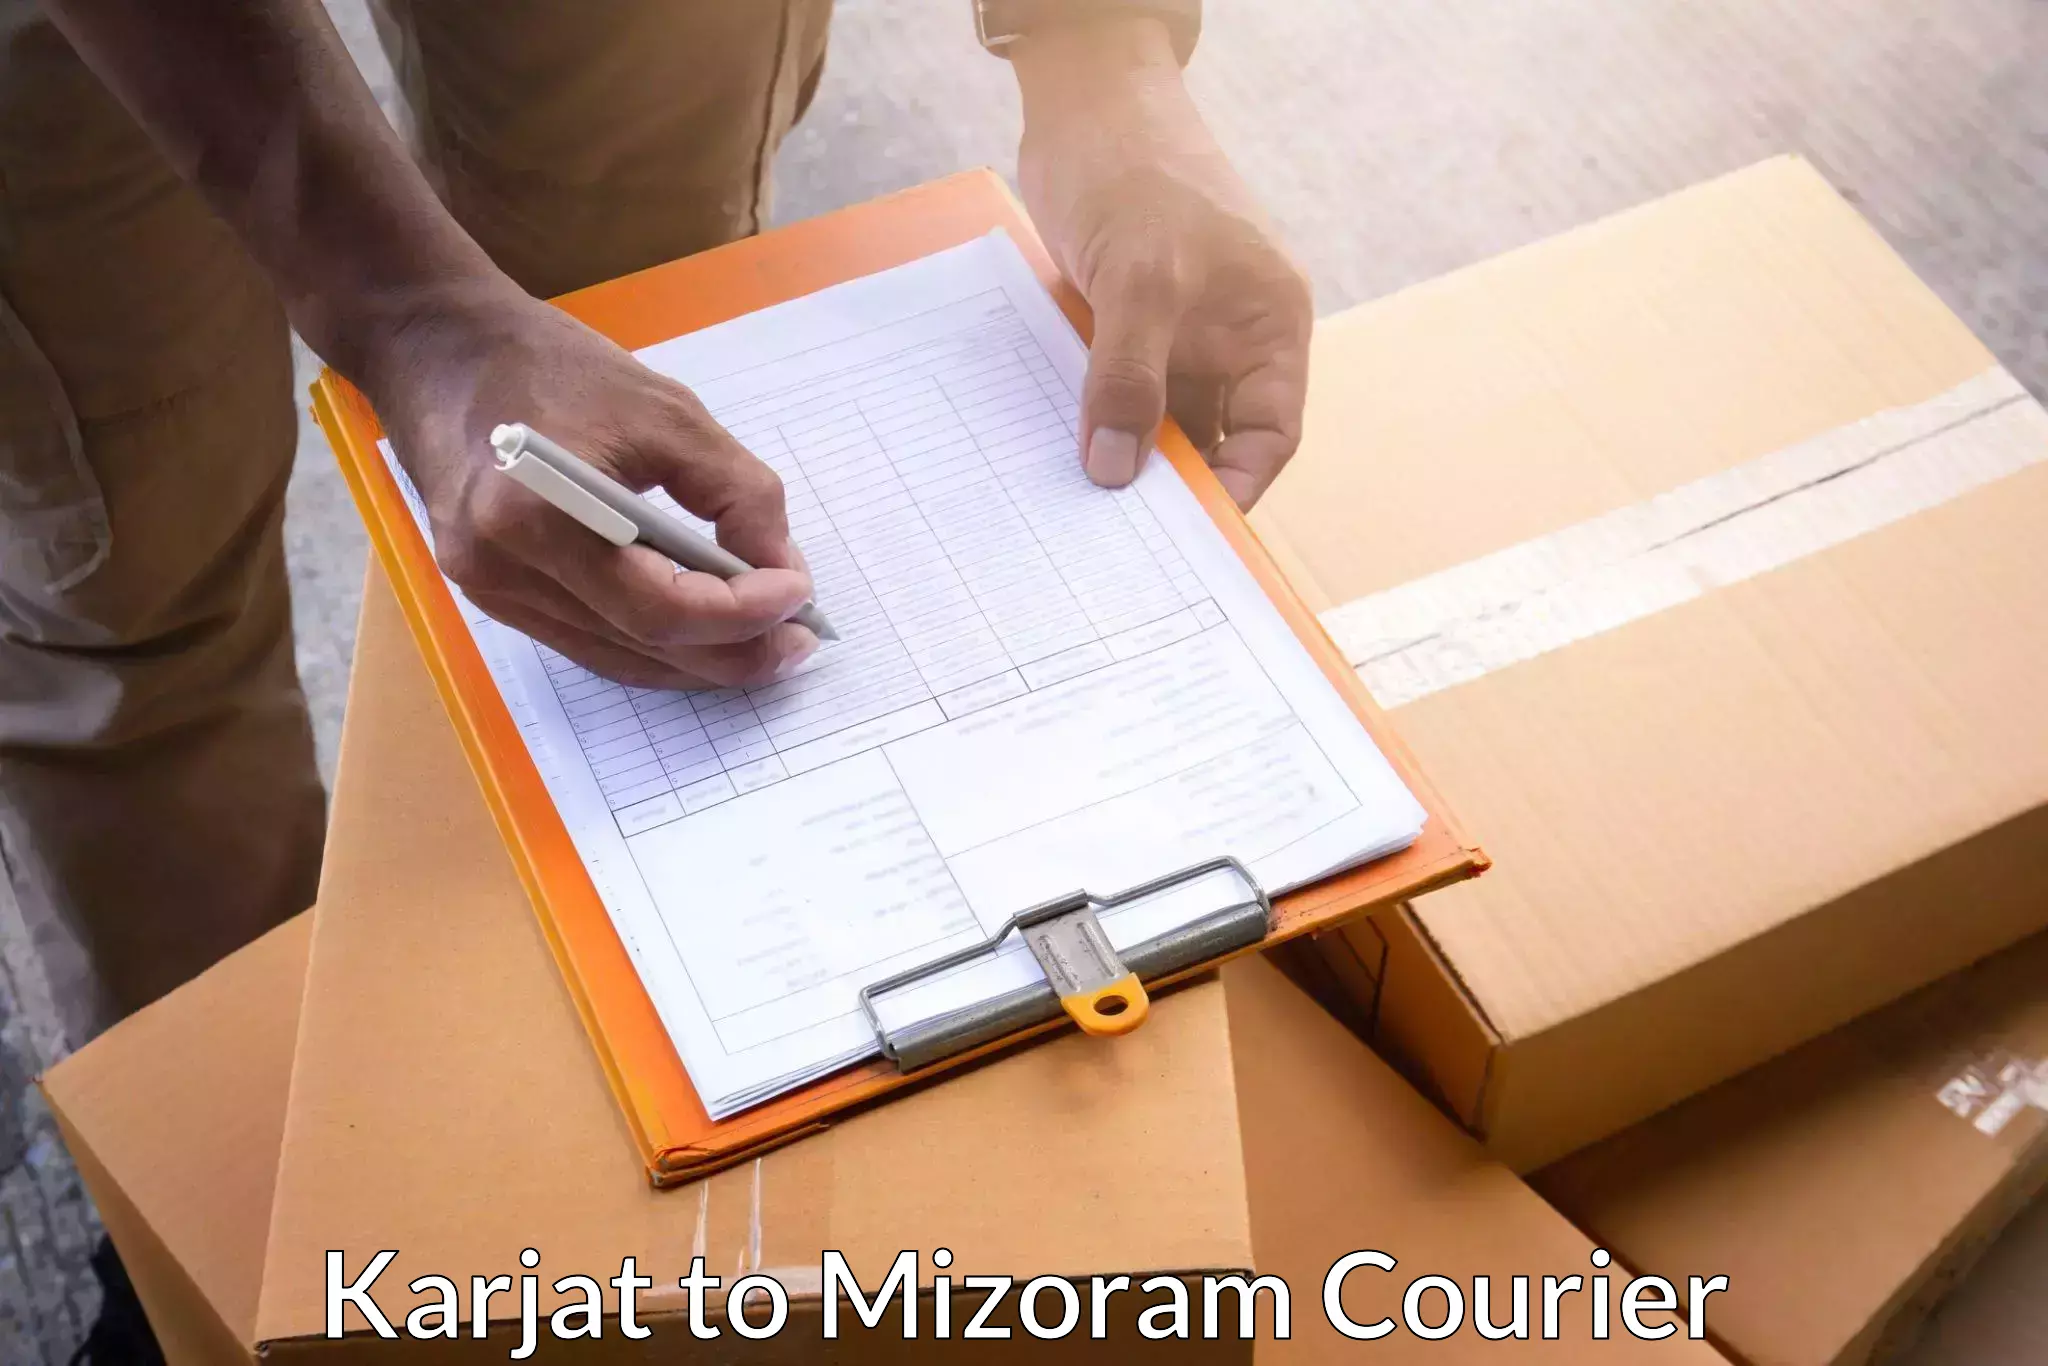 Custom courier packaging in Karjat to Mizoram